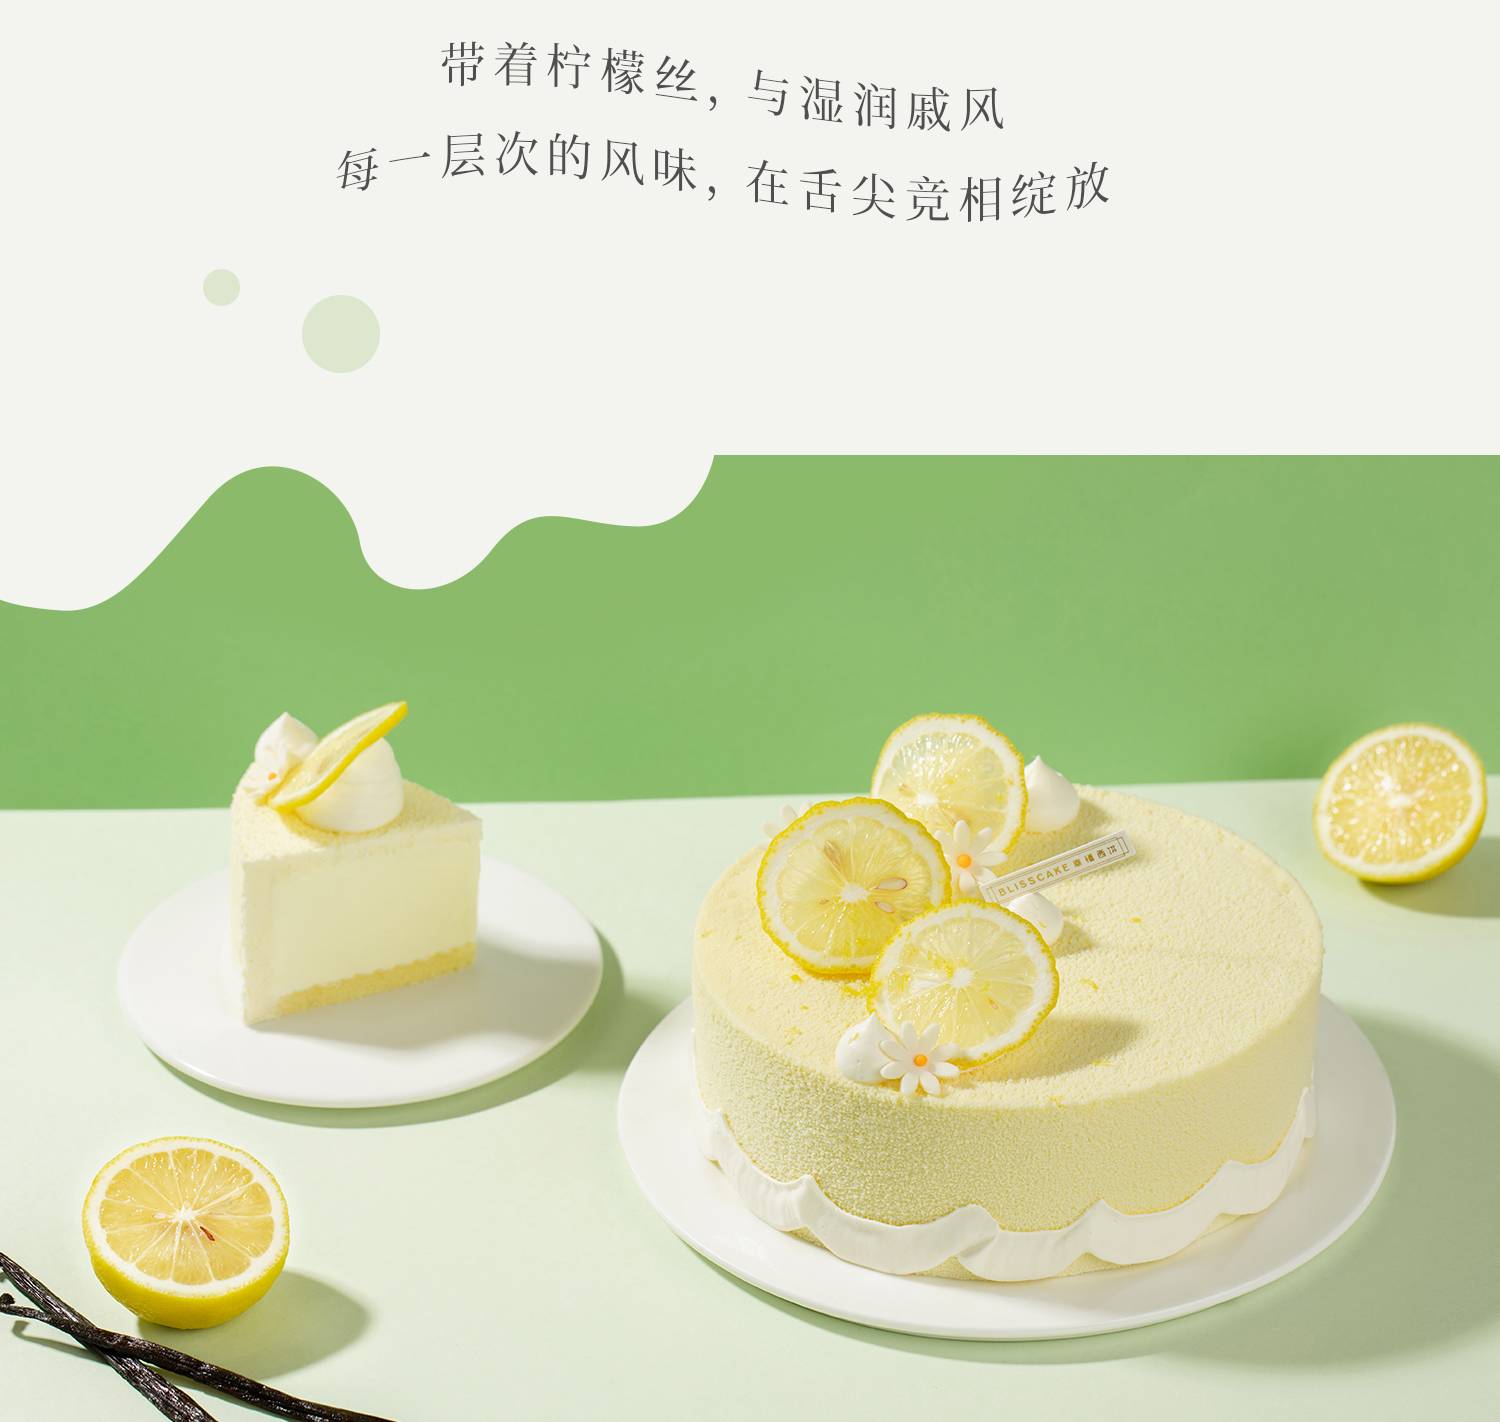 香草冰淇淋慕斯_幸福西饼蛋糕预定_加盟幸福西饼_深圳幸福西饼官方网站